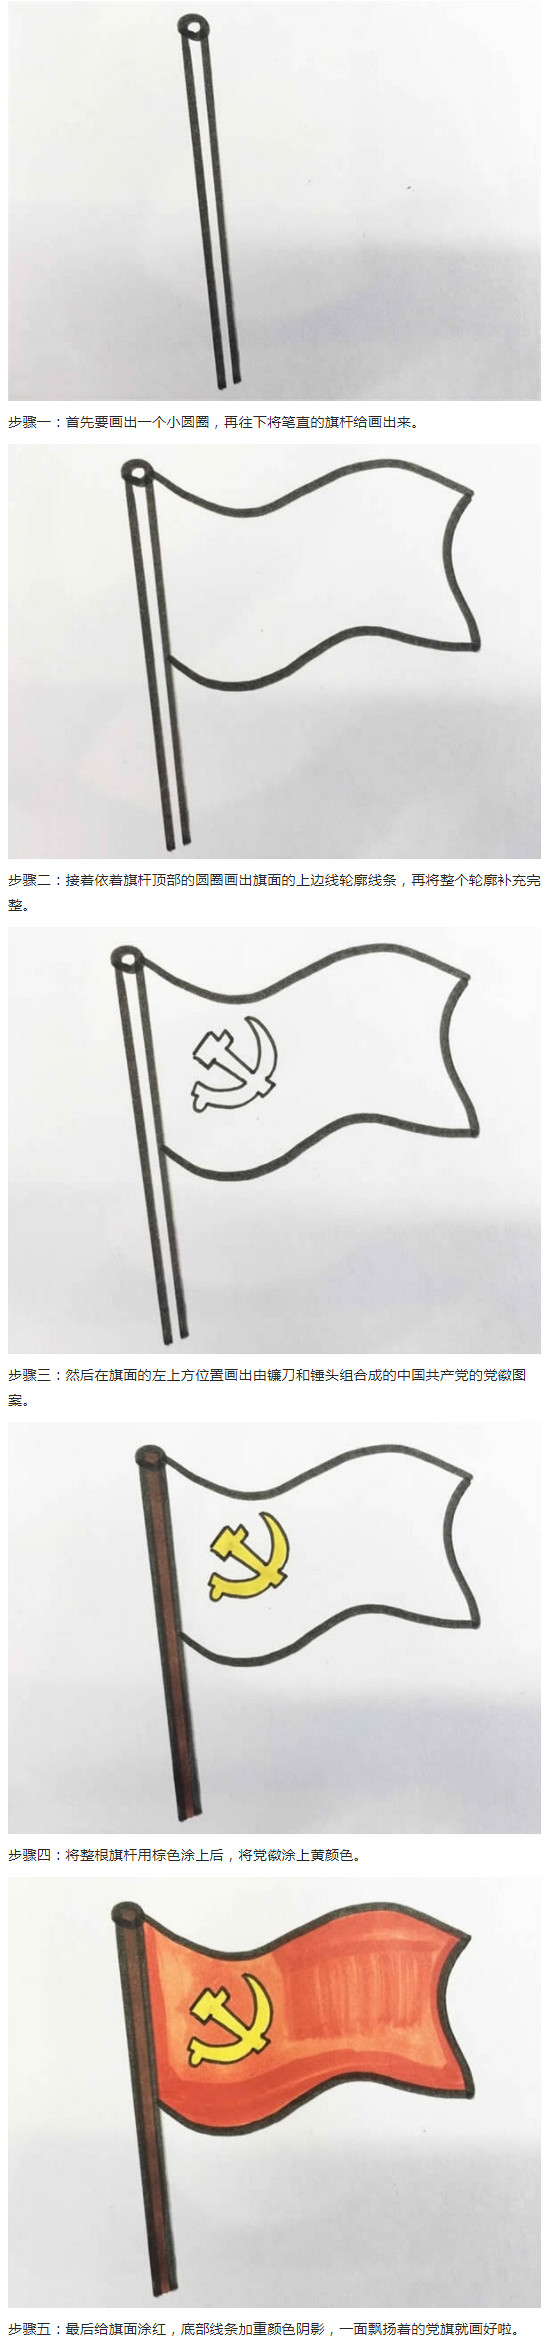 党旗的画法步骤图解 党旗怎么画涂颜色